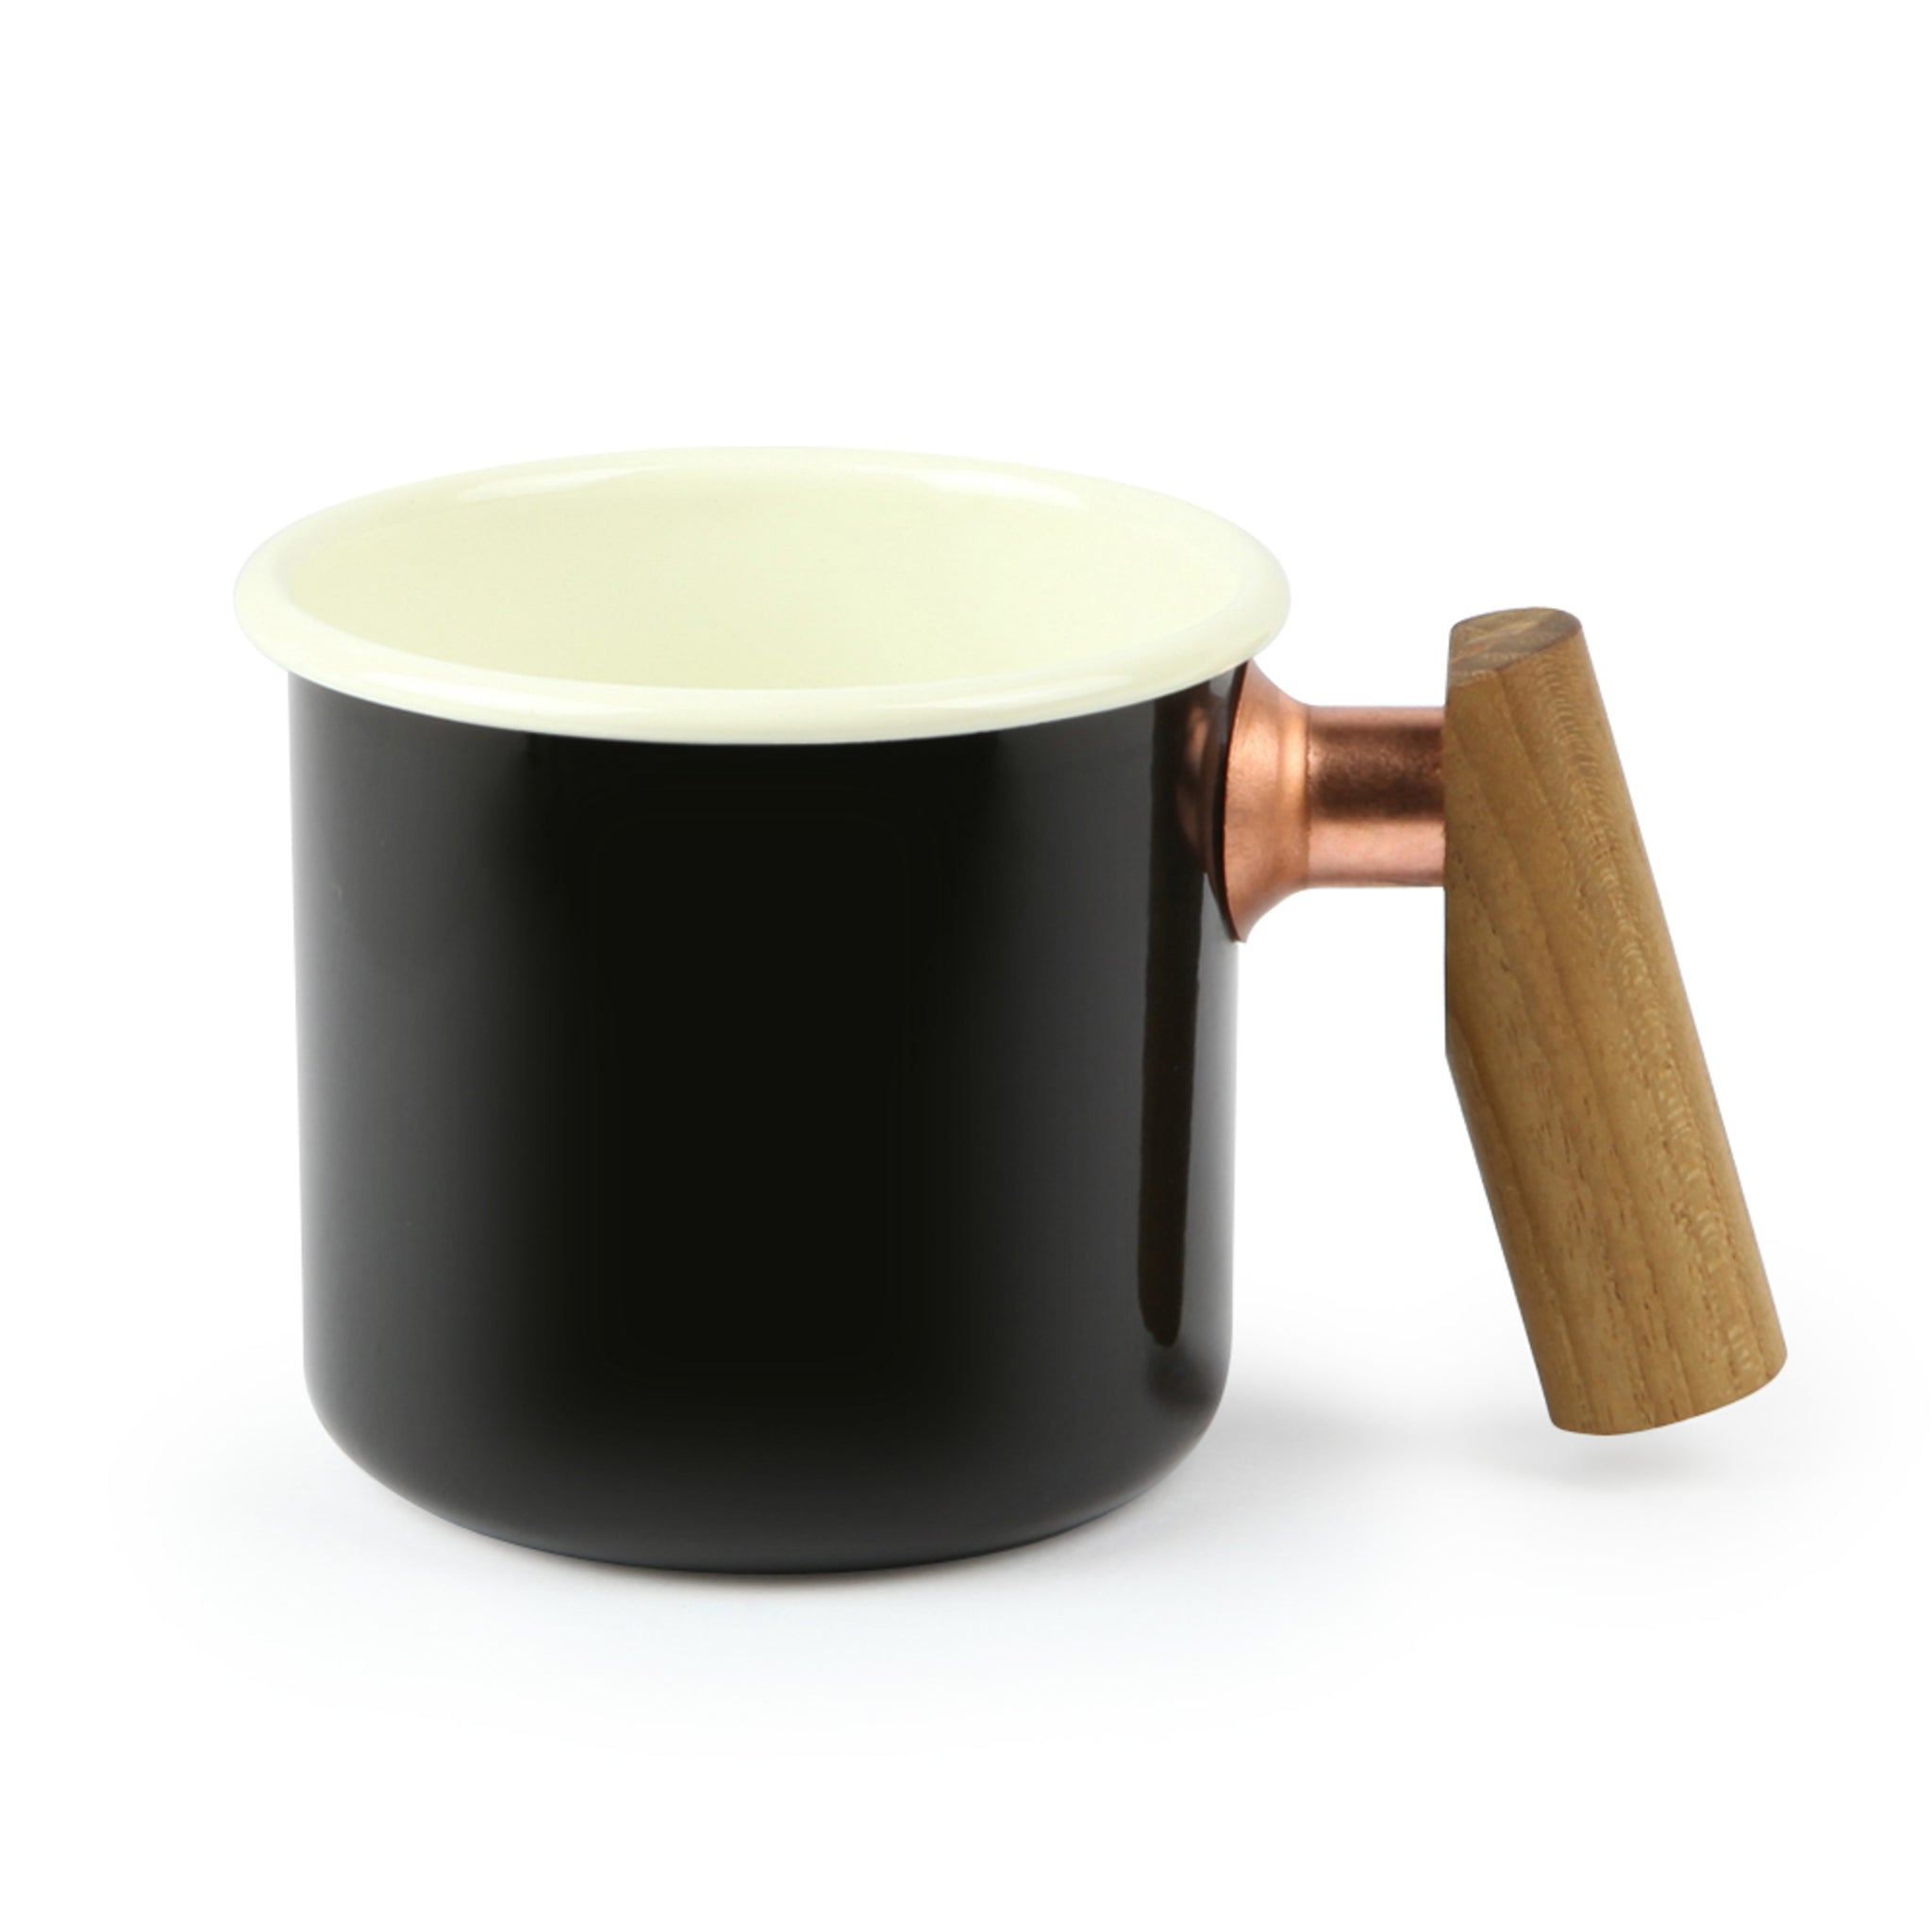 Truvii 木柄琺瑯杯 咖啡杯 品茗茶杯 400ml TENM2